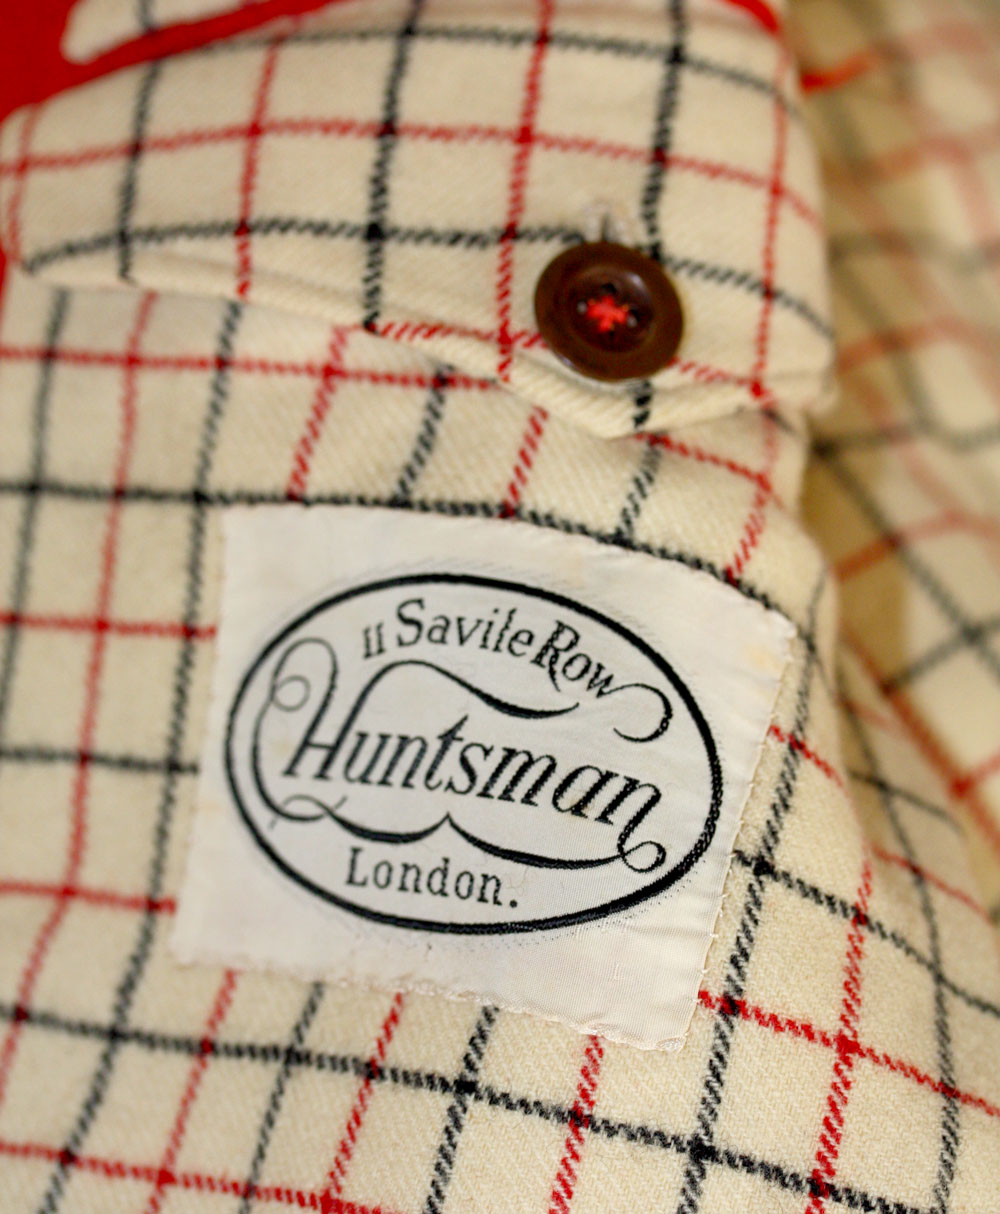 HUNTSMAN LONDON wool jacket